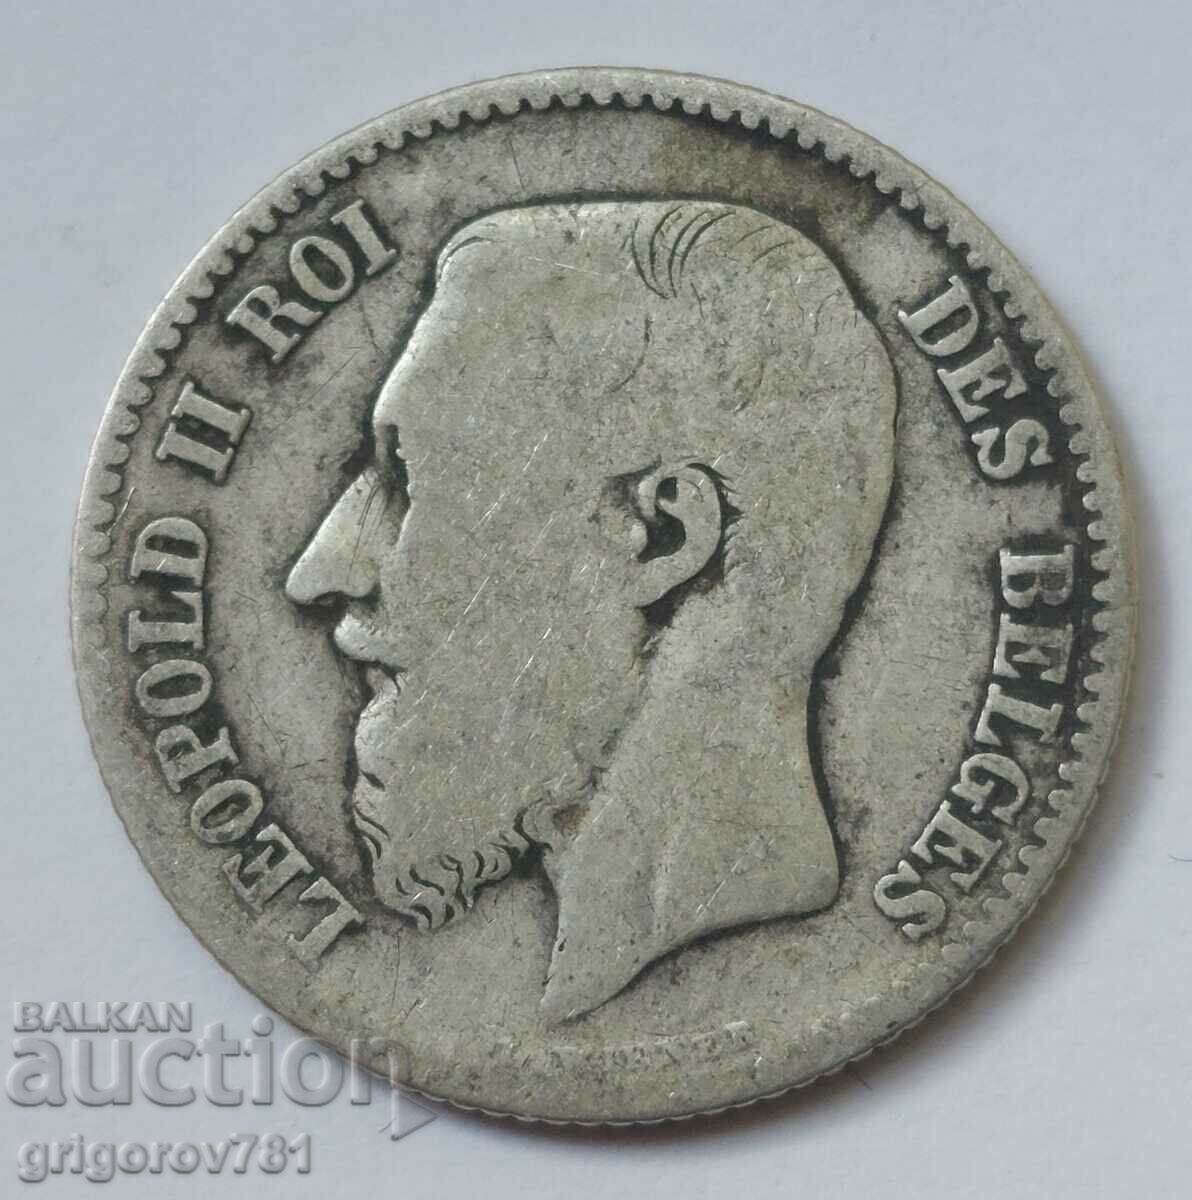 1 franc silver Belgium 1867 - silver coin #60